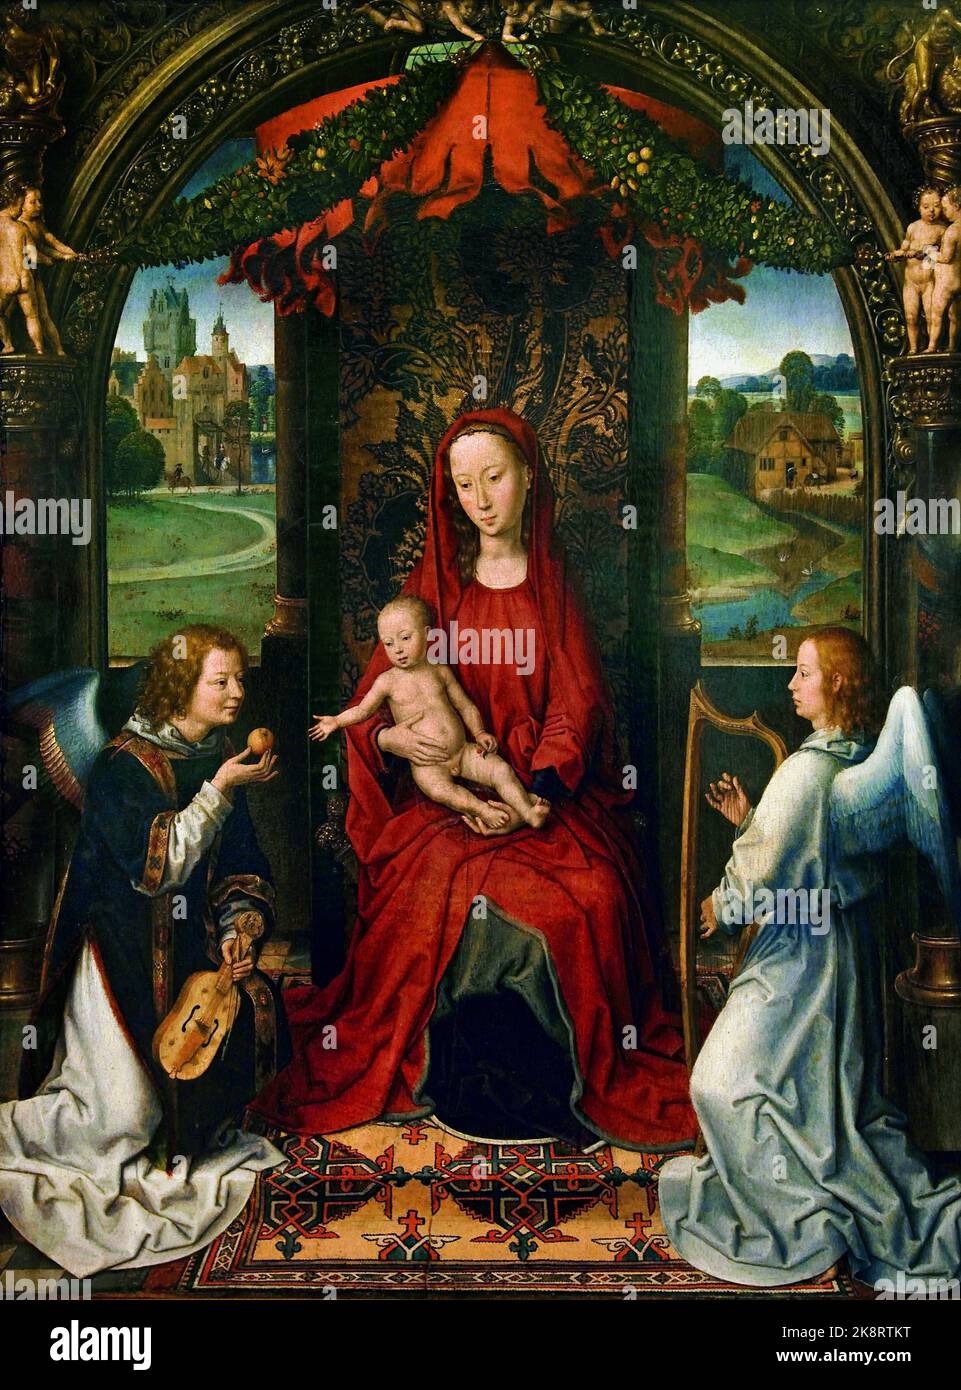 Madonna et l'enfant enthroned avec angles 1480 par Hans Memling - Memlinc ( 1430 – 1494) était un peintre allemand Allemagne flamand belge Banque D'Images